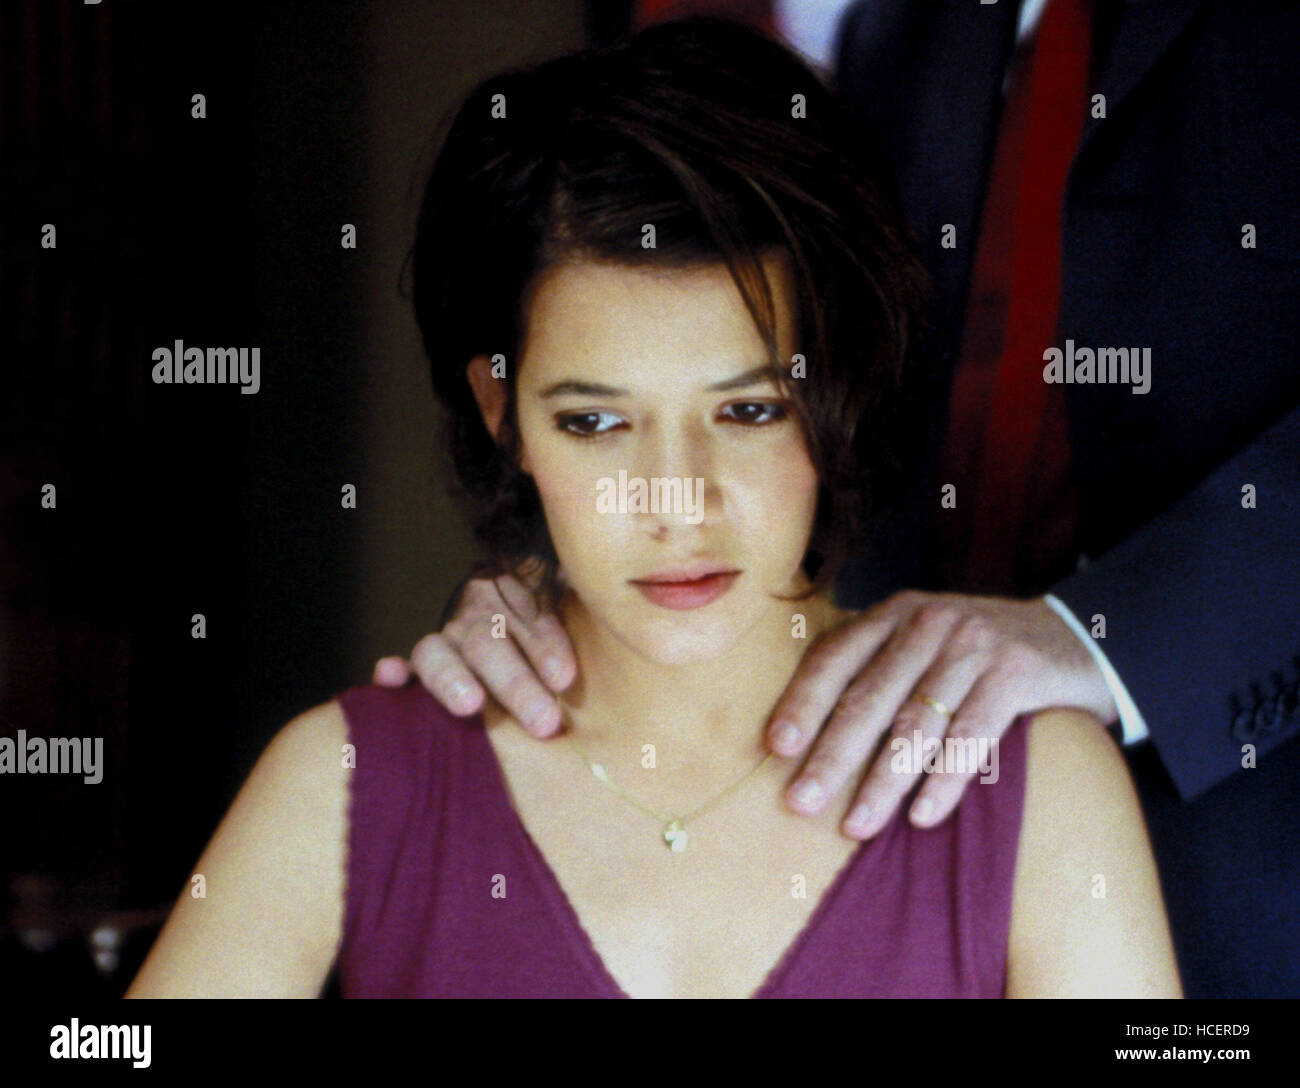 LA FLEUR DU MAL, Melanie Doutey, 2003 Stockfotografie - Alamy